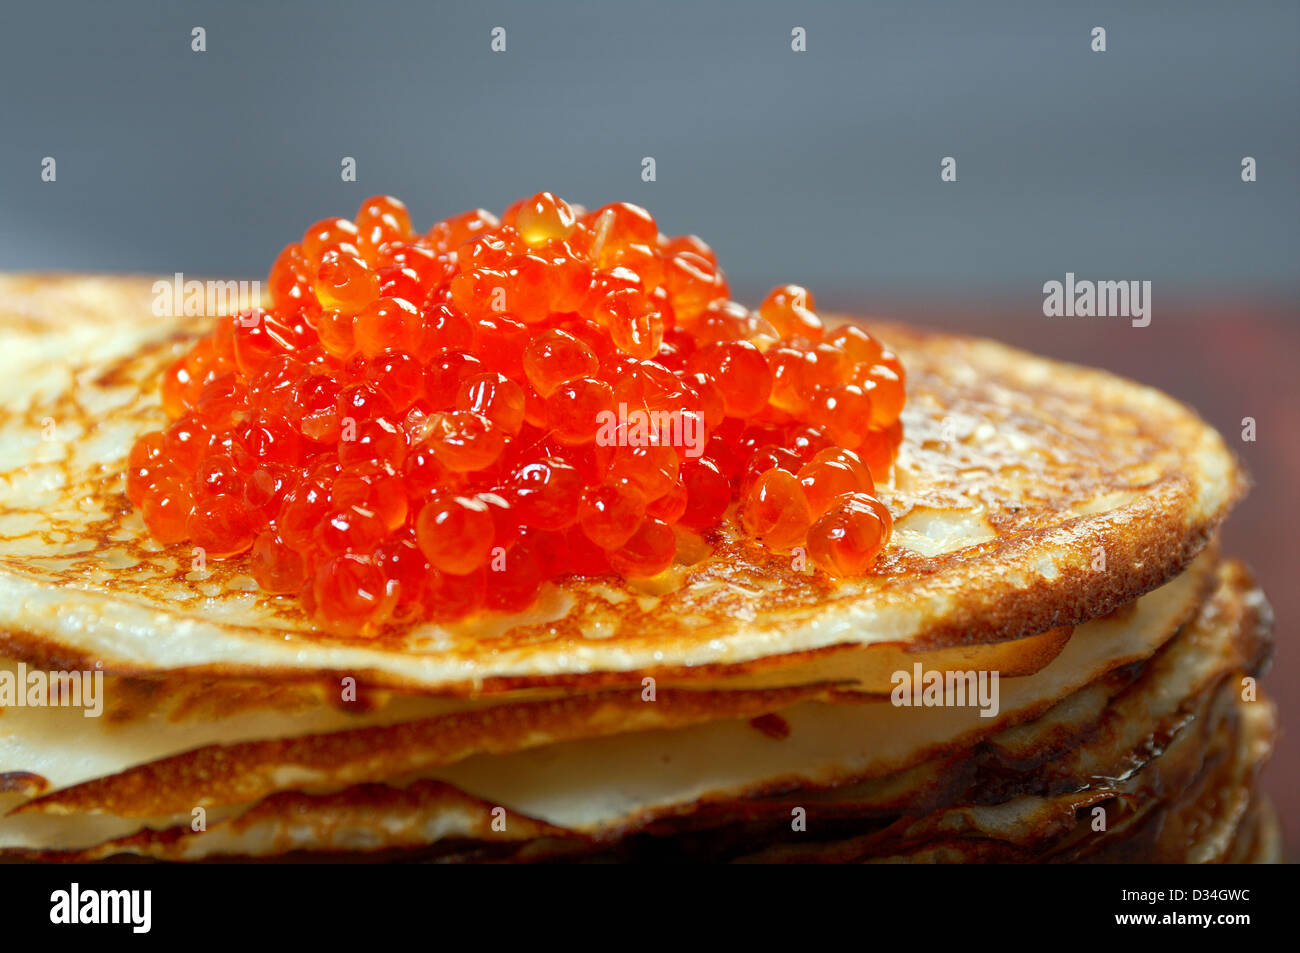 Traditionelle russische Pfannkuchen mit rotem Kaviar Stockfotografie ...